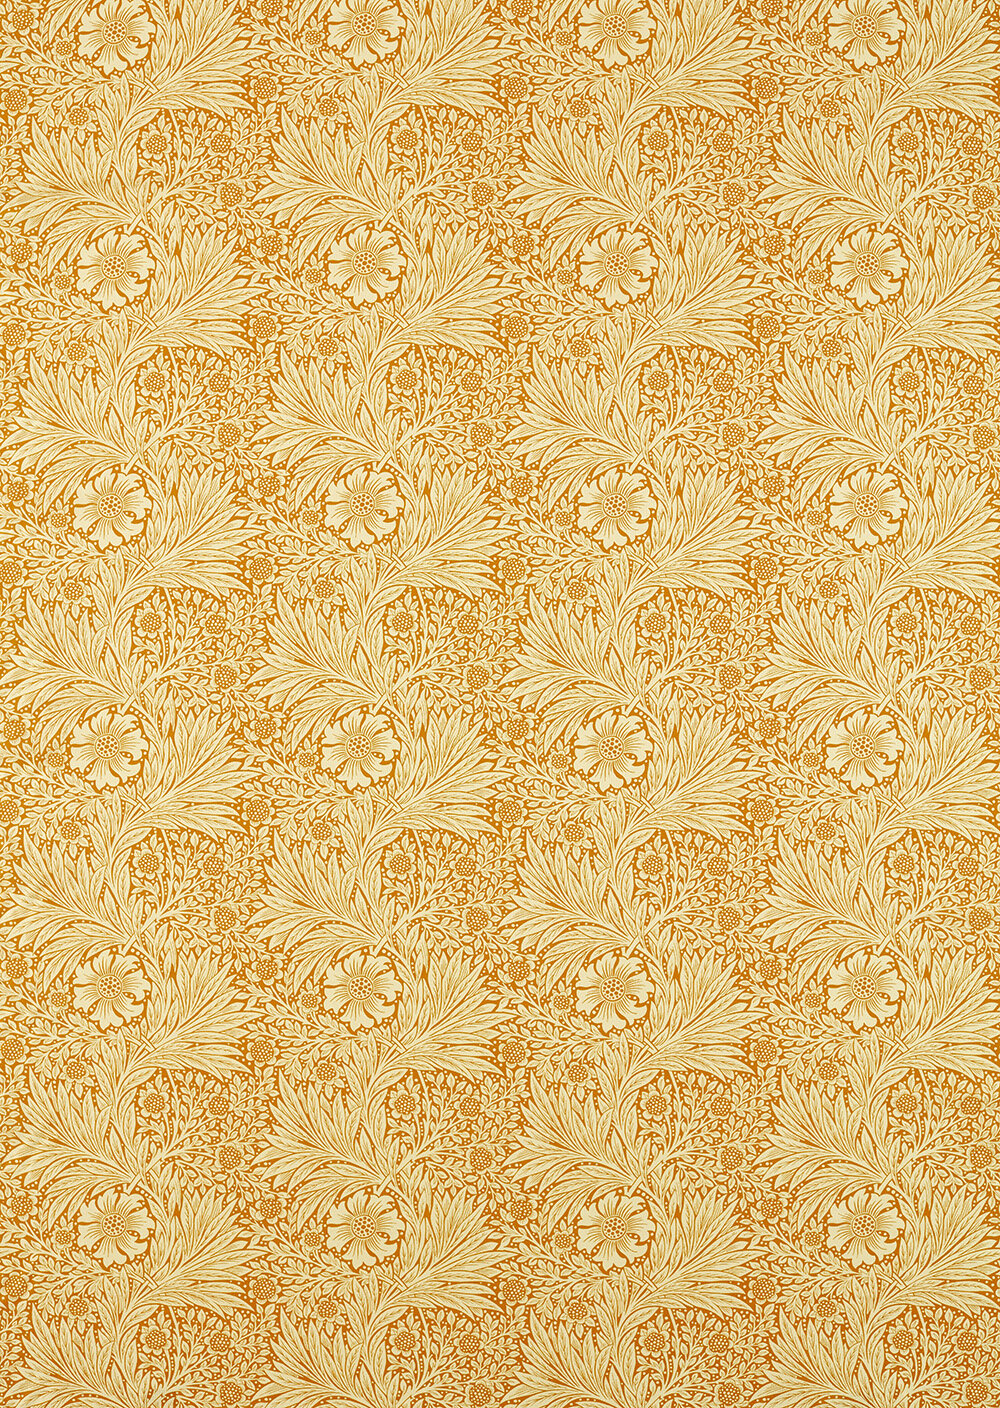 Marigold  Fabric - Cream/ Orange - by Morris